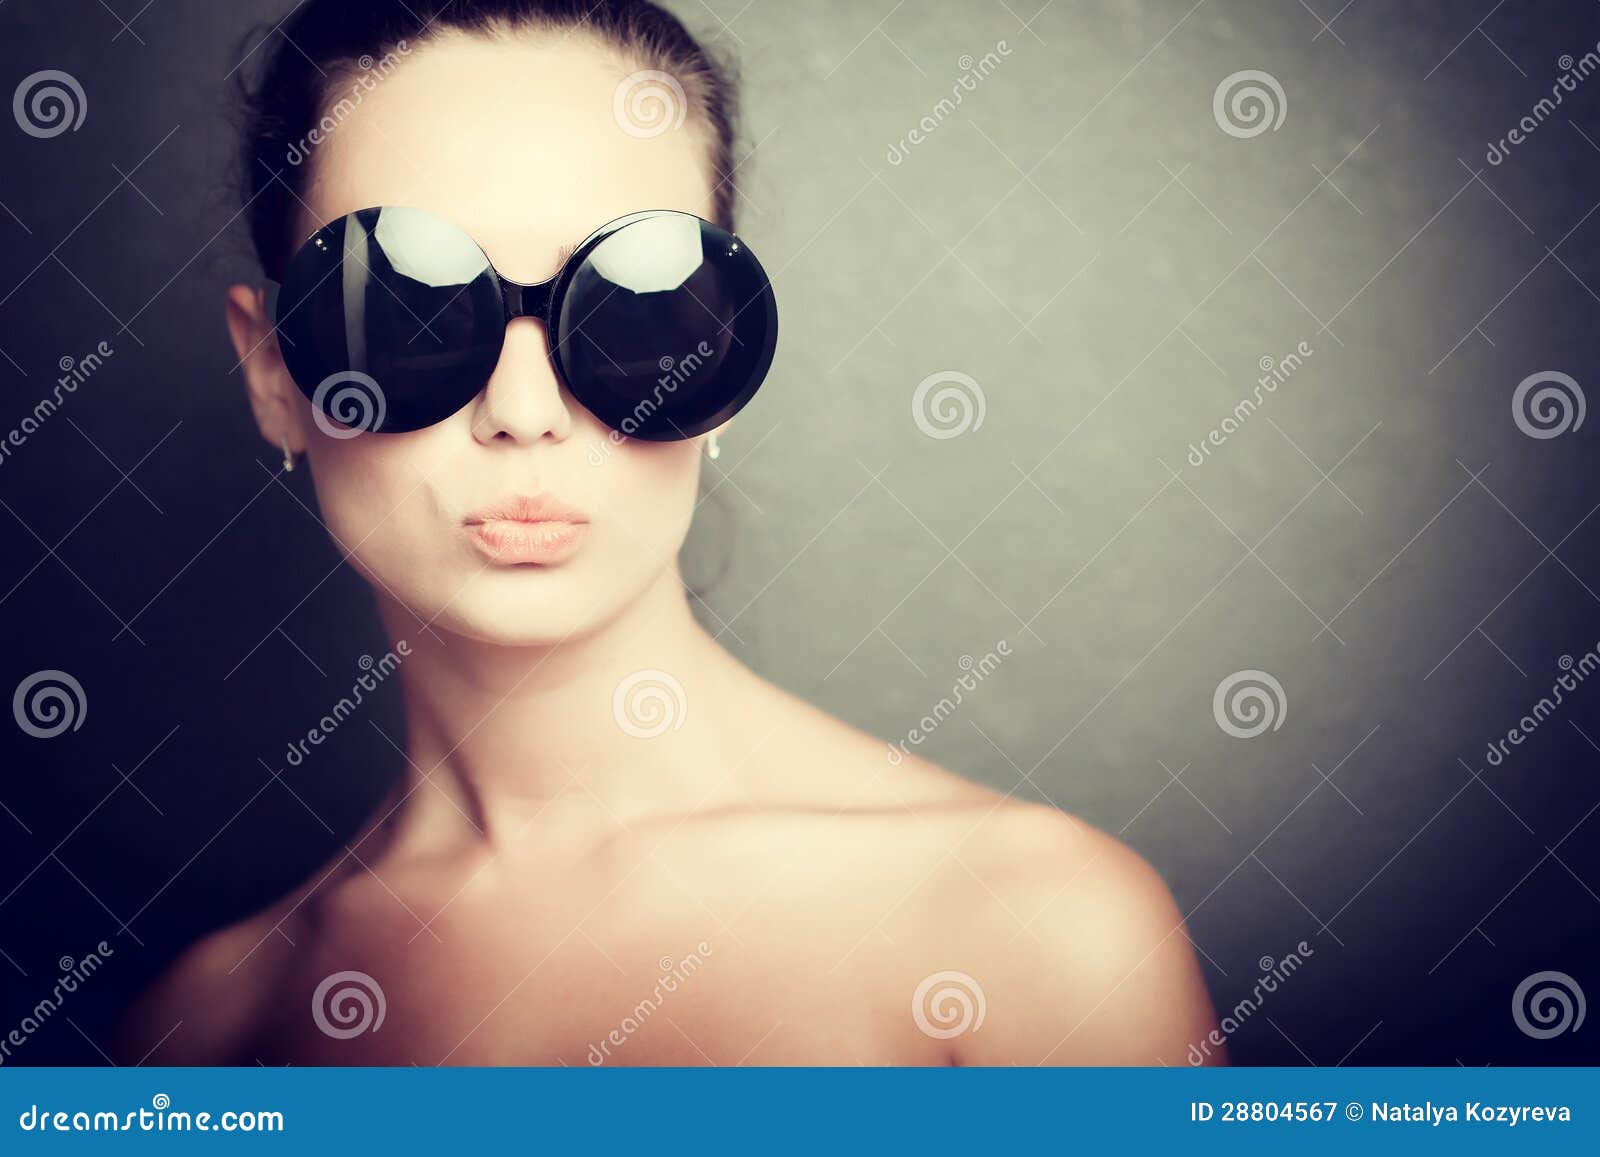 Огромные черные очки. Девушка в солнечных очках. Девушка в темных очках. Девушка в круглых солнцезащитных очках. Девушка в круглых солнечных очках.